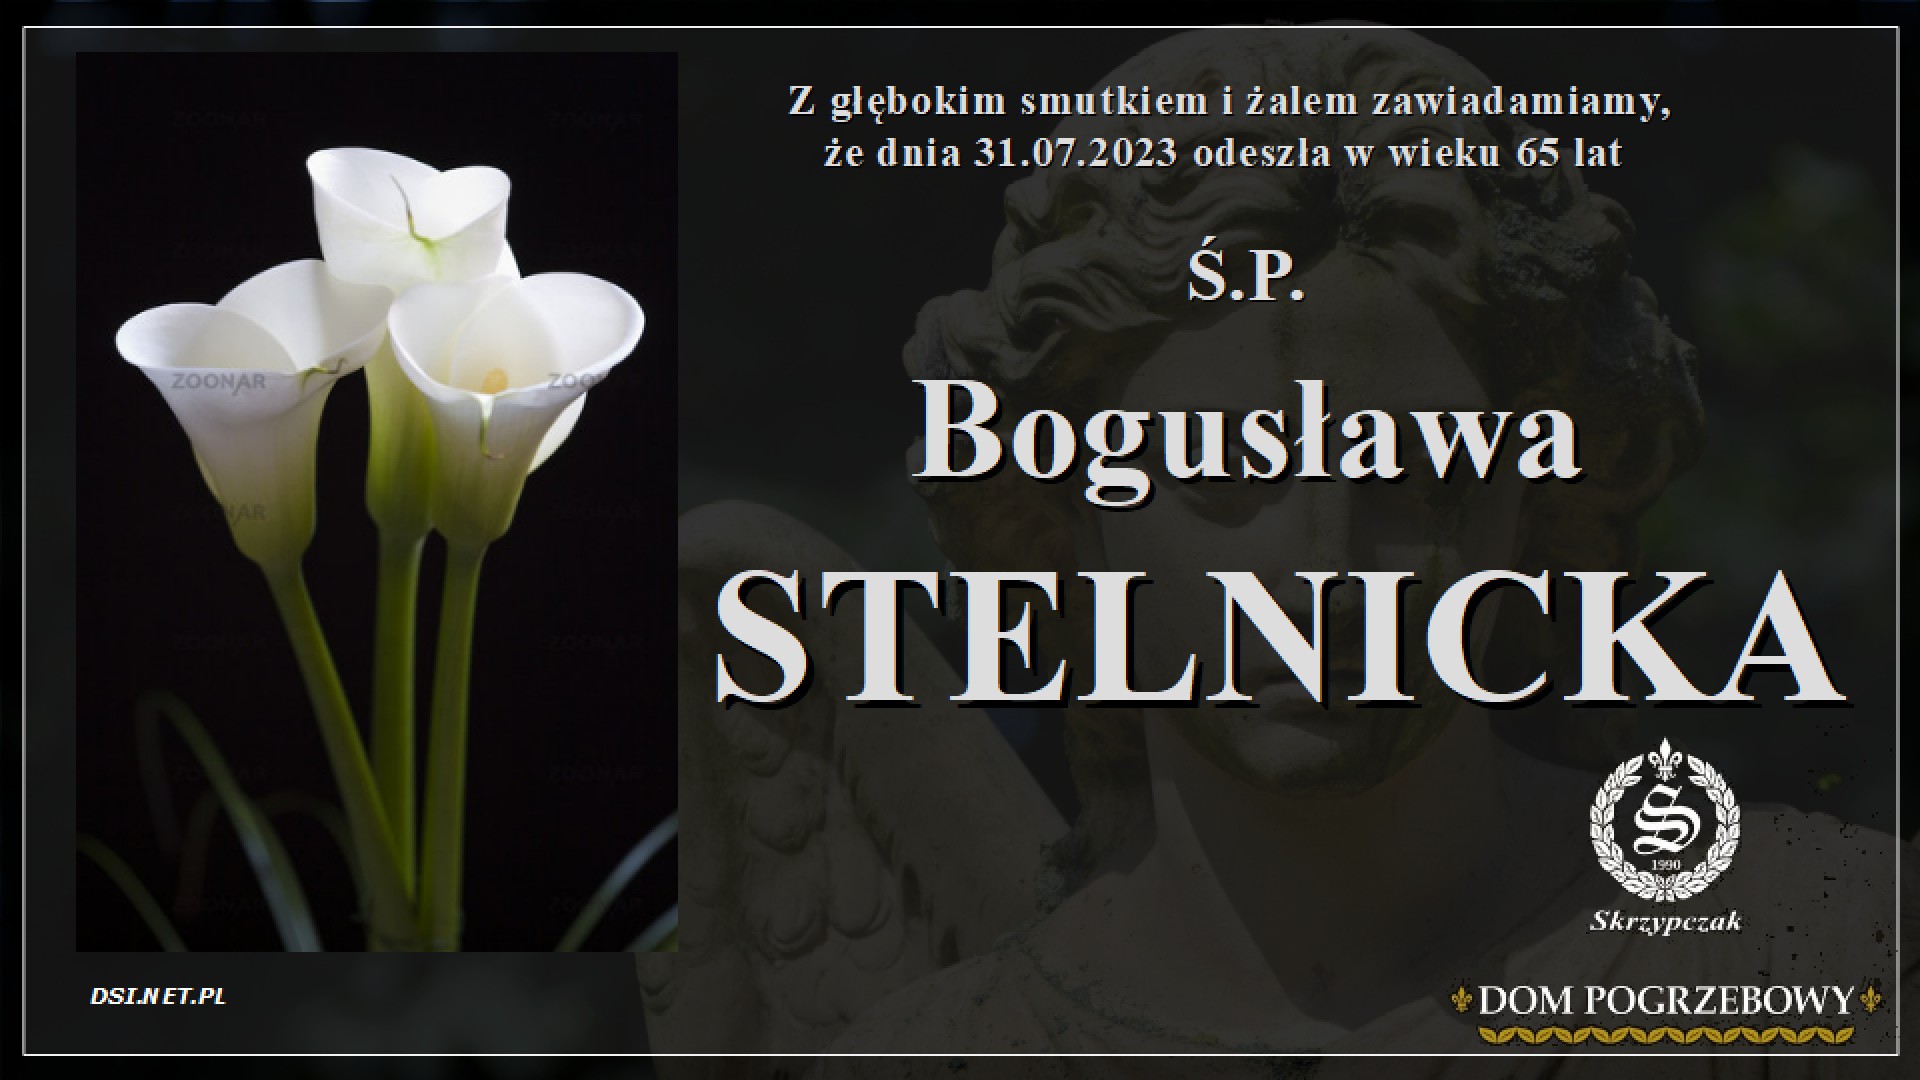 Ś.P. Bogusława Stelnicka